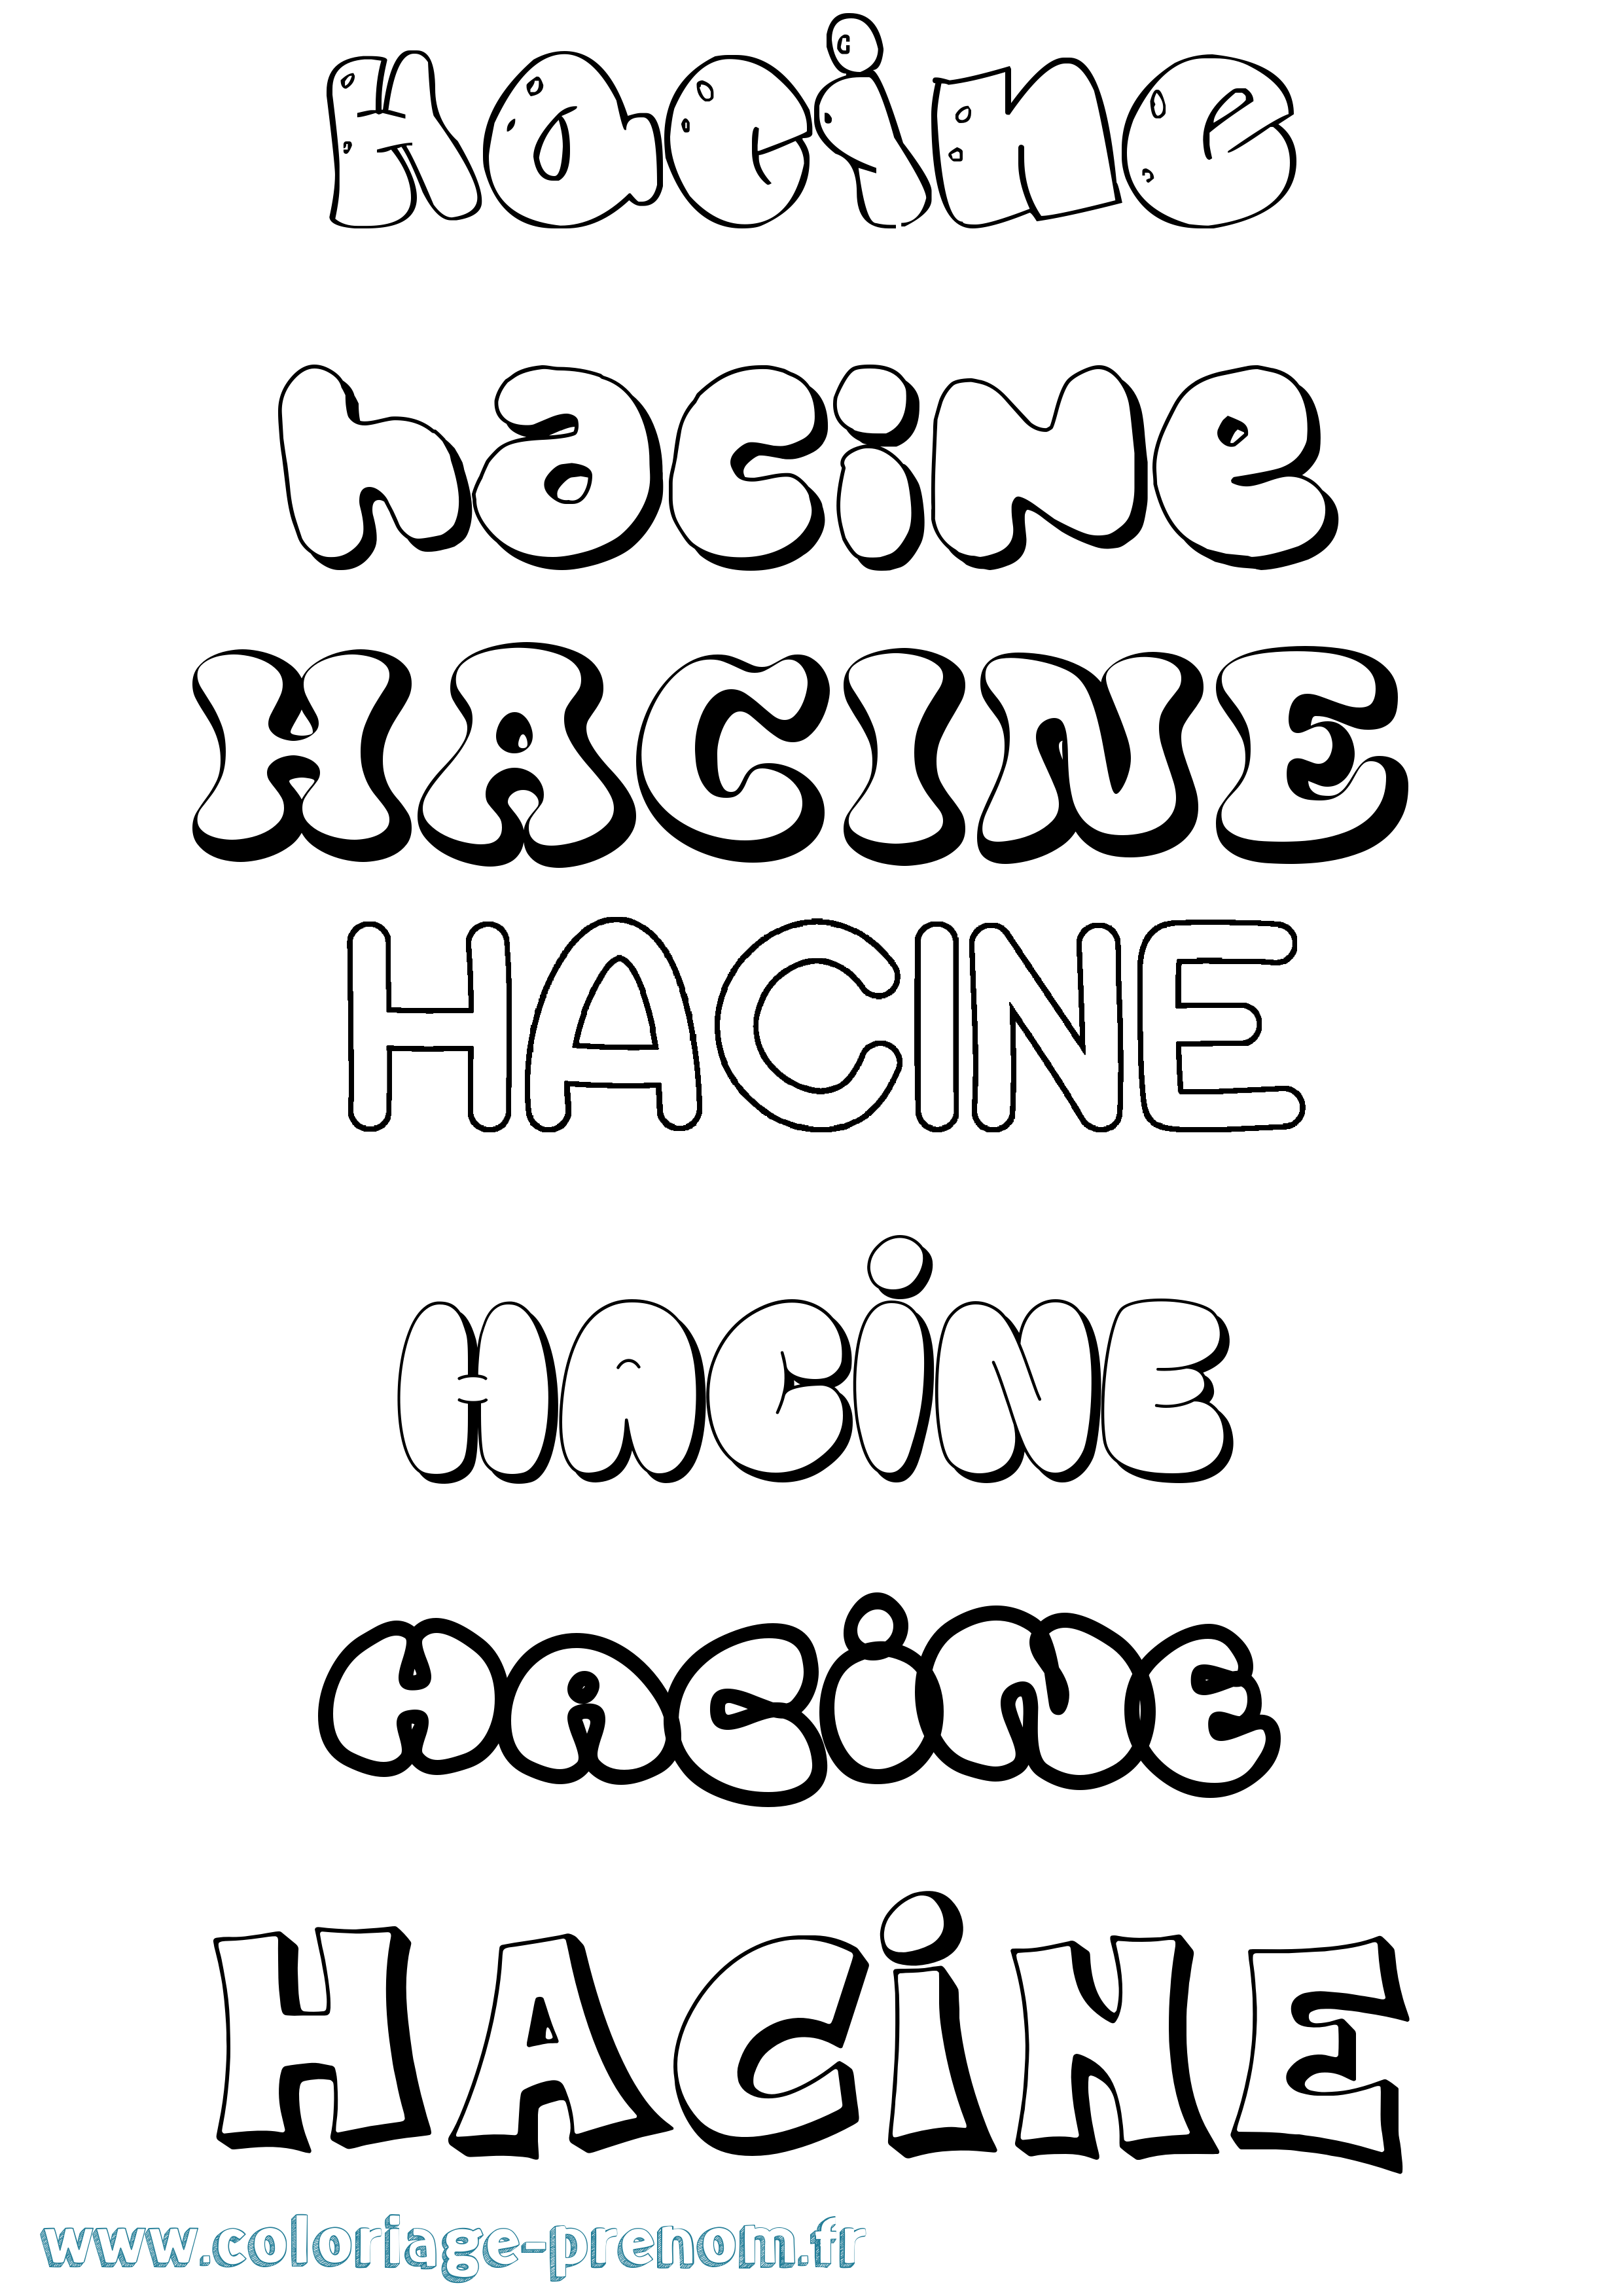 Coloriage prénom Hacine Bubble